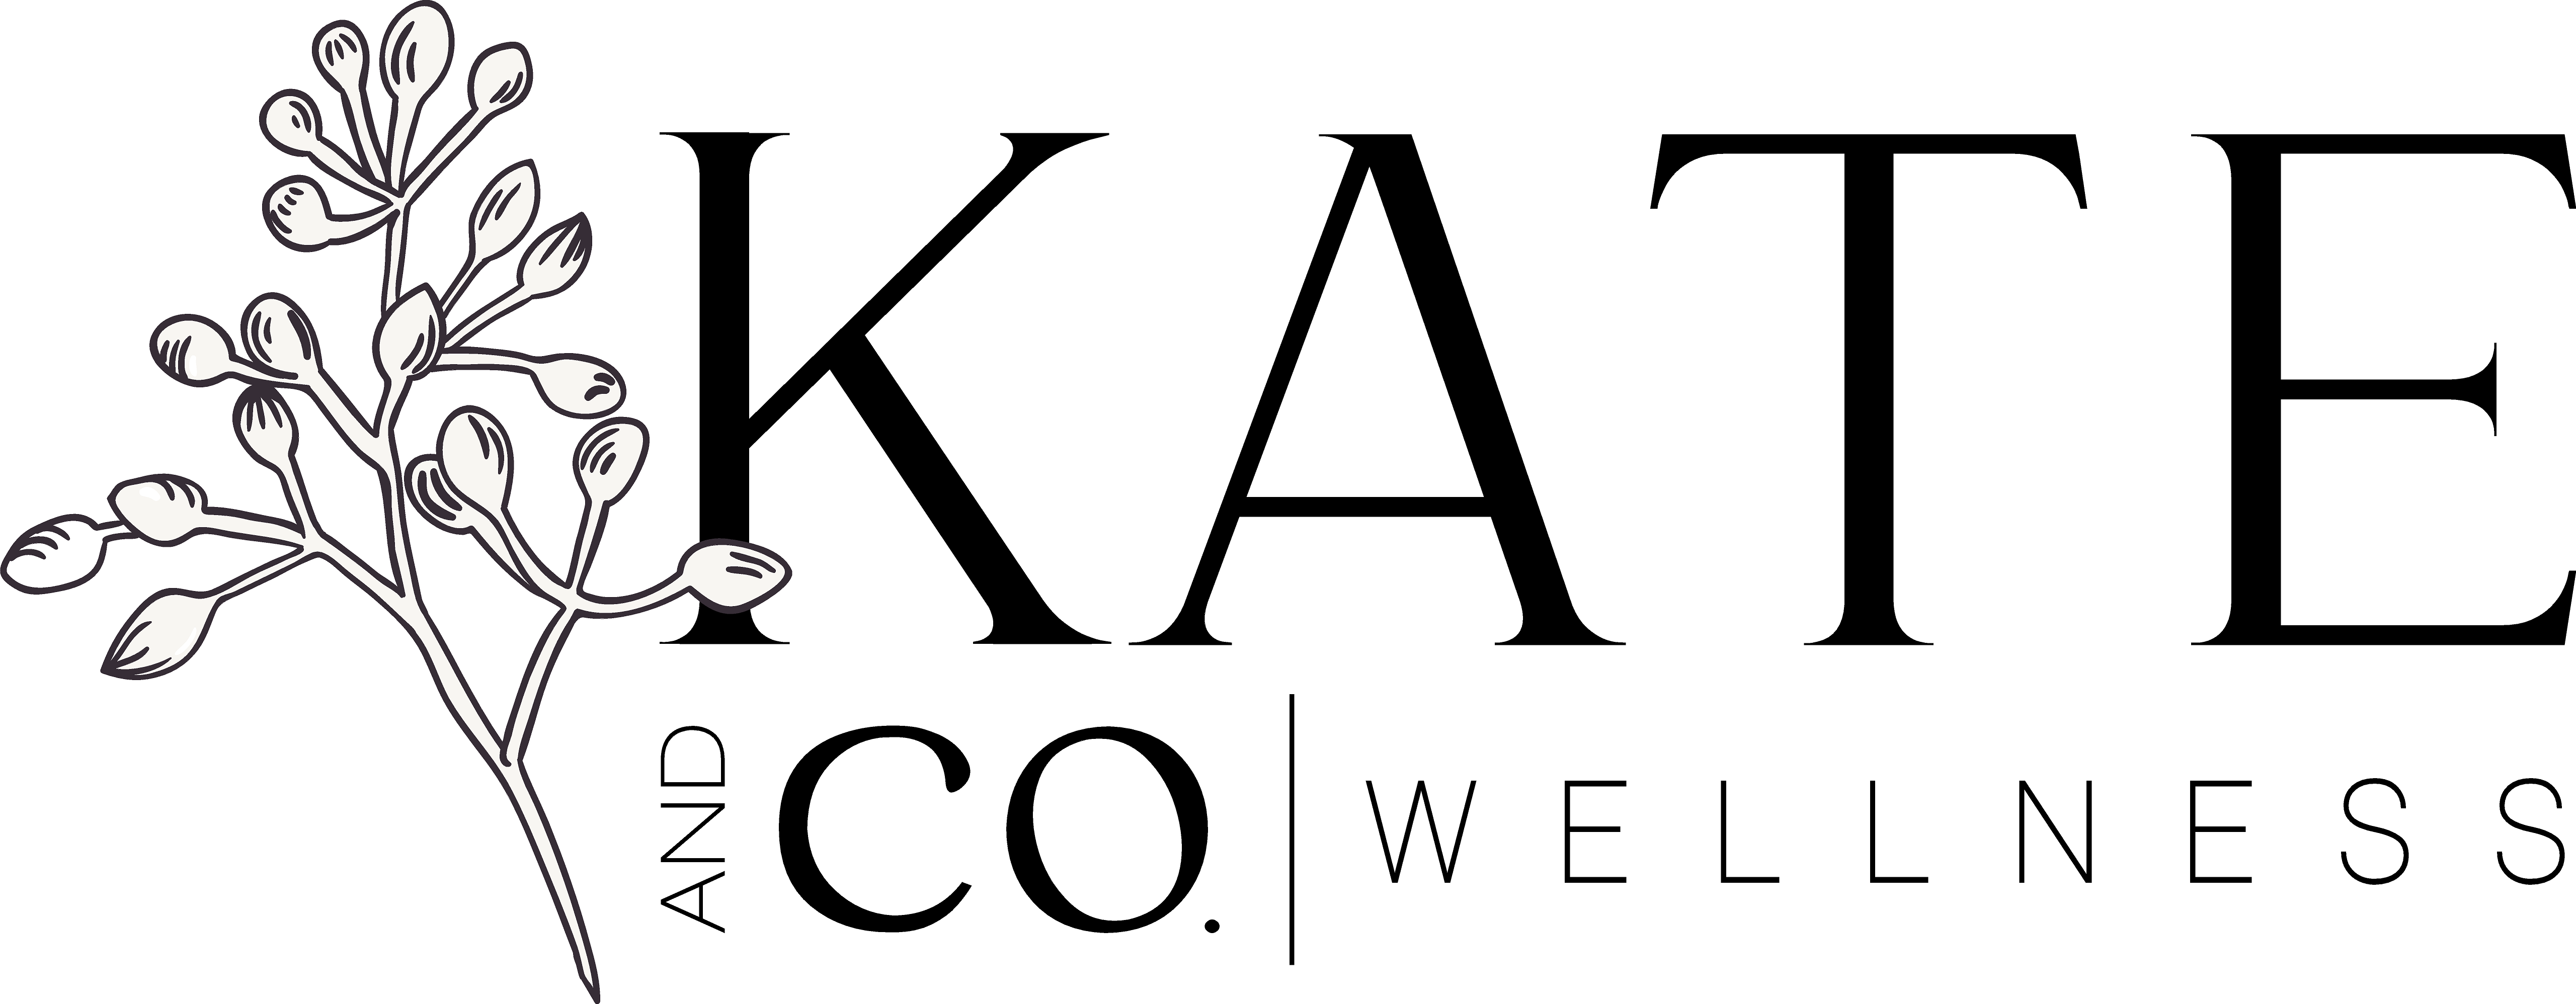 Kate & Co. Wellness